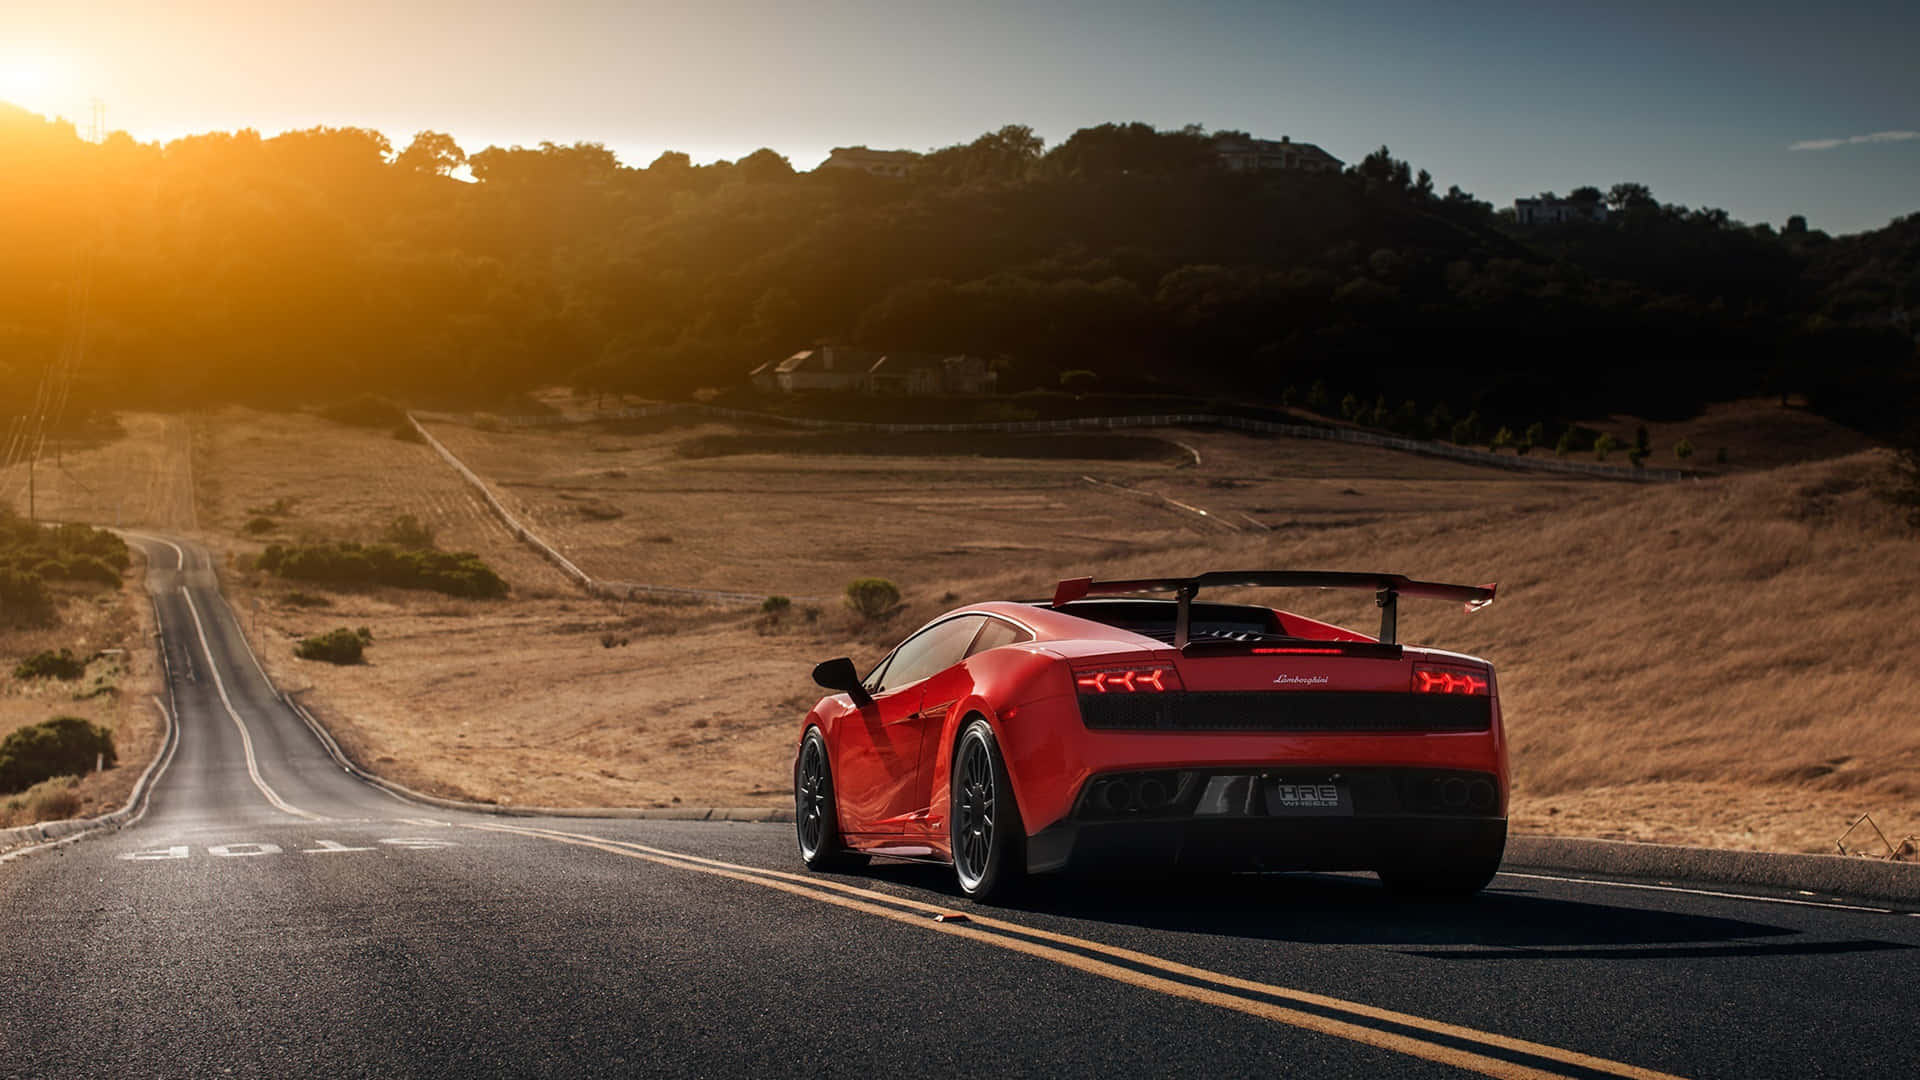 Caption: Stunning Lamborghini Gallardo in Motion Wallpaper